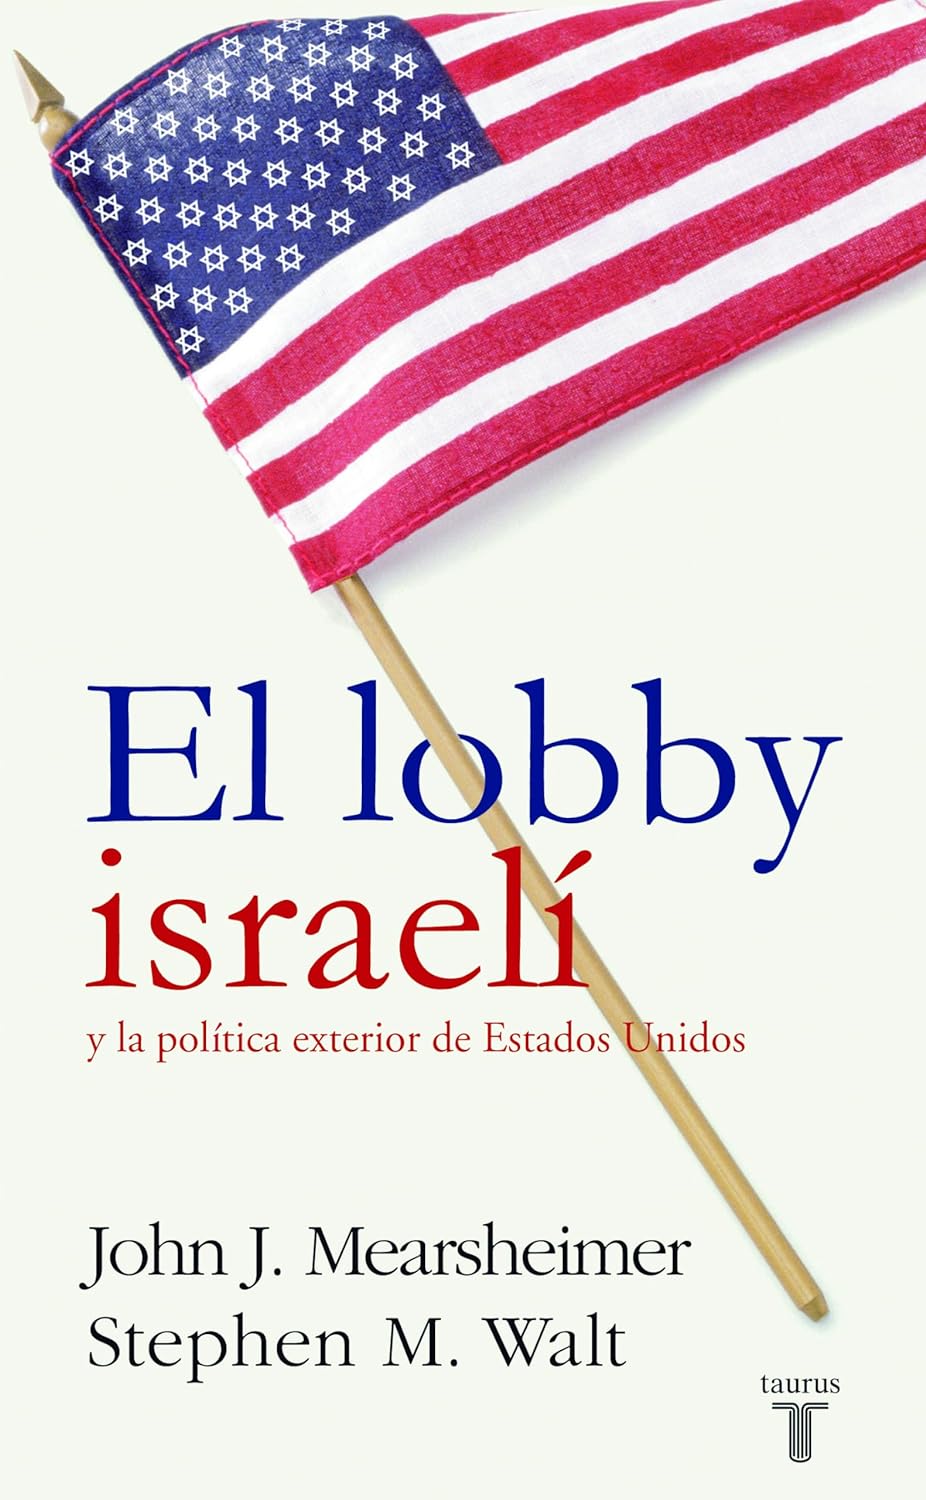 John J. Mearsheimer: El lobby israelí y la política exterior de Estados Unidos (Spanish language, 2007, Taurus)